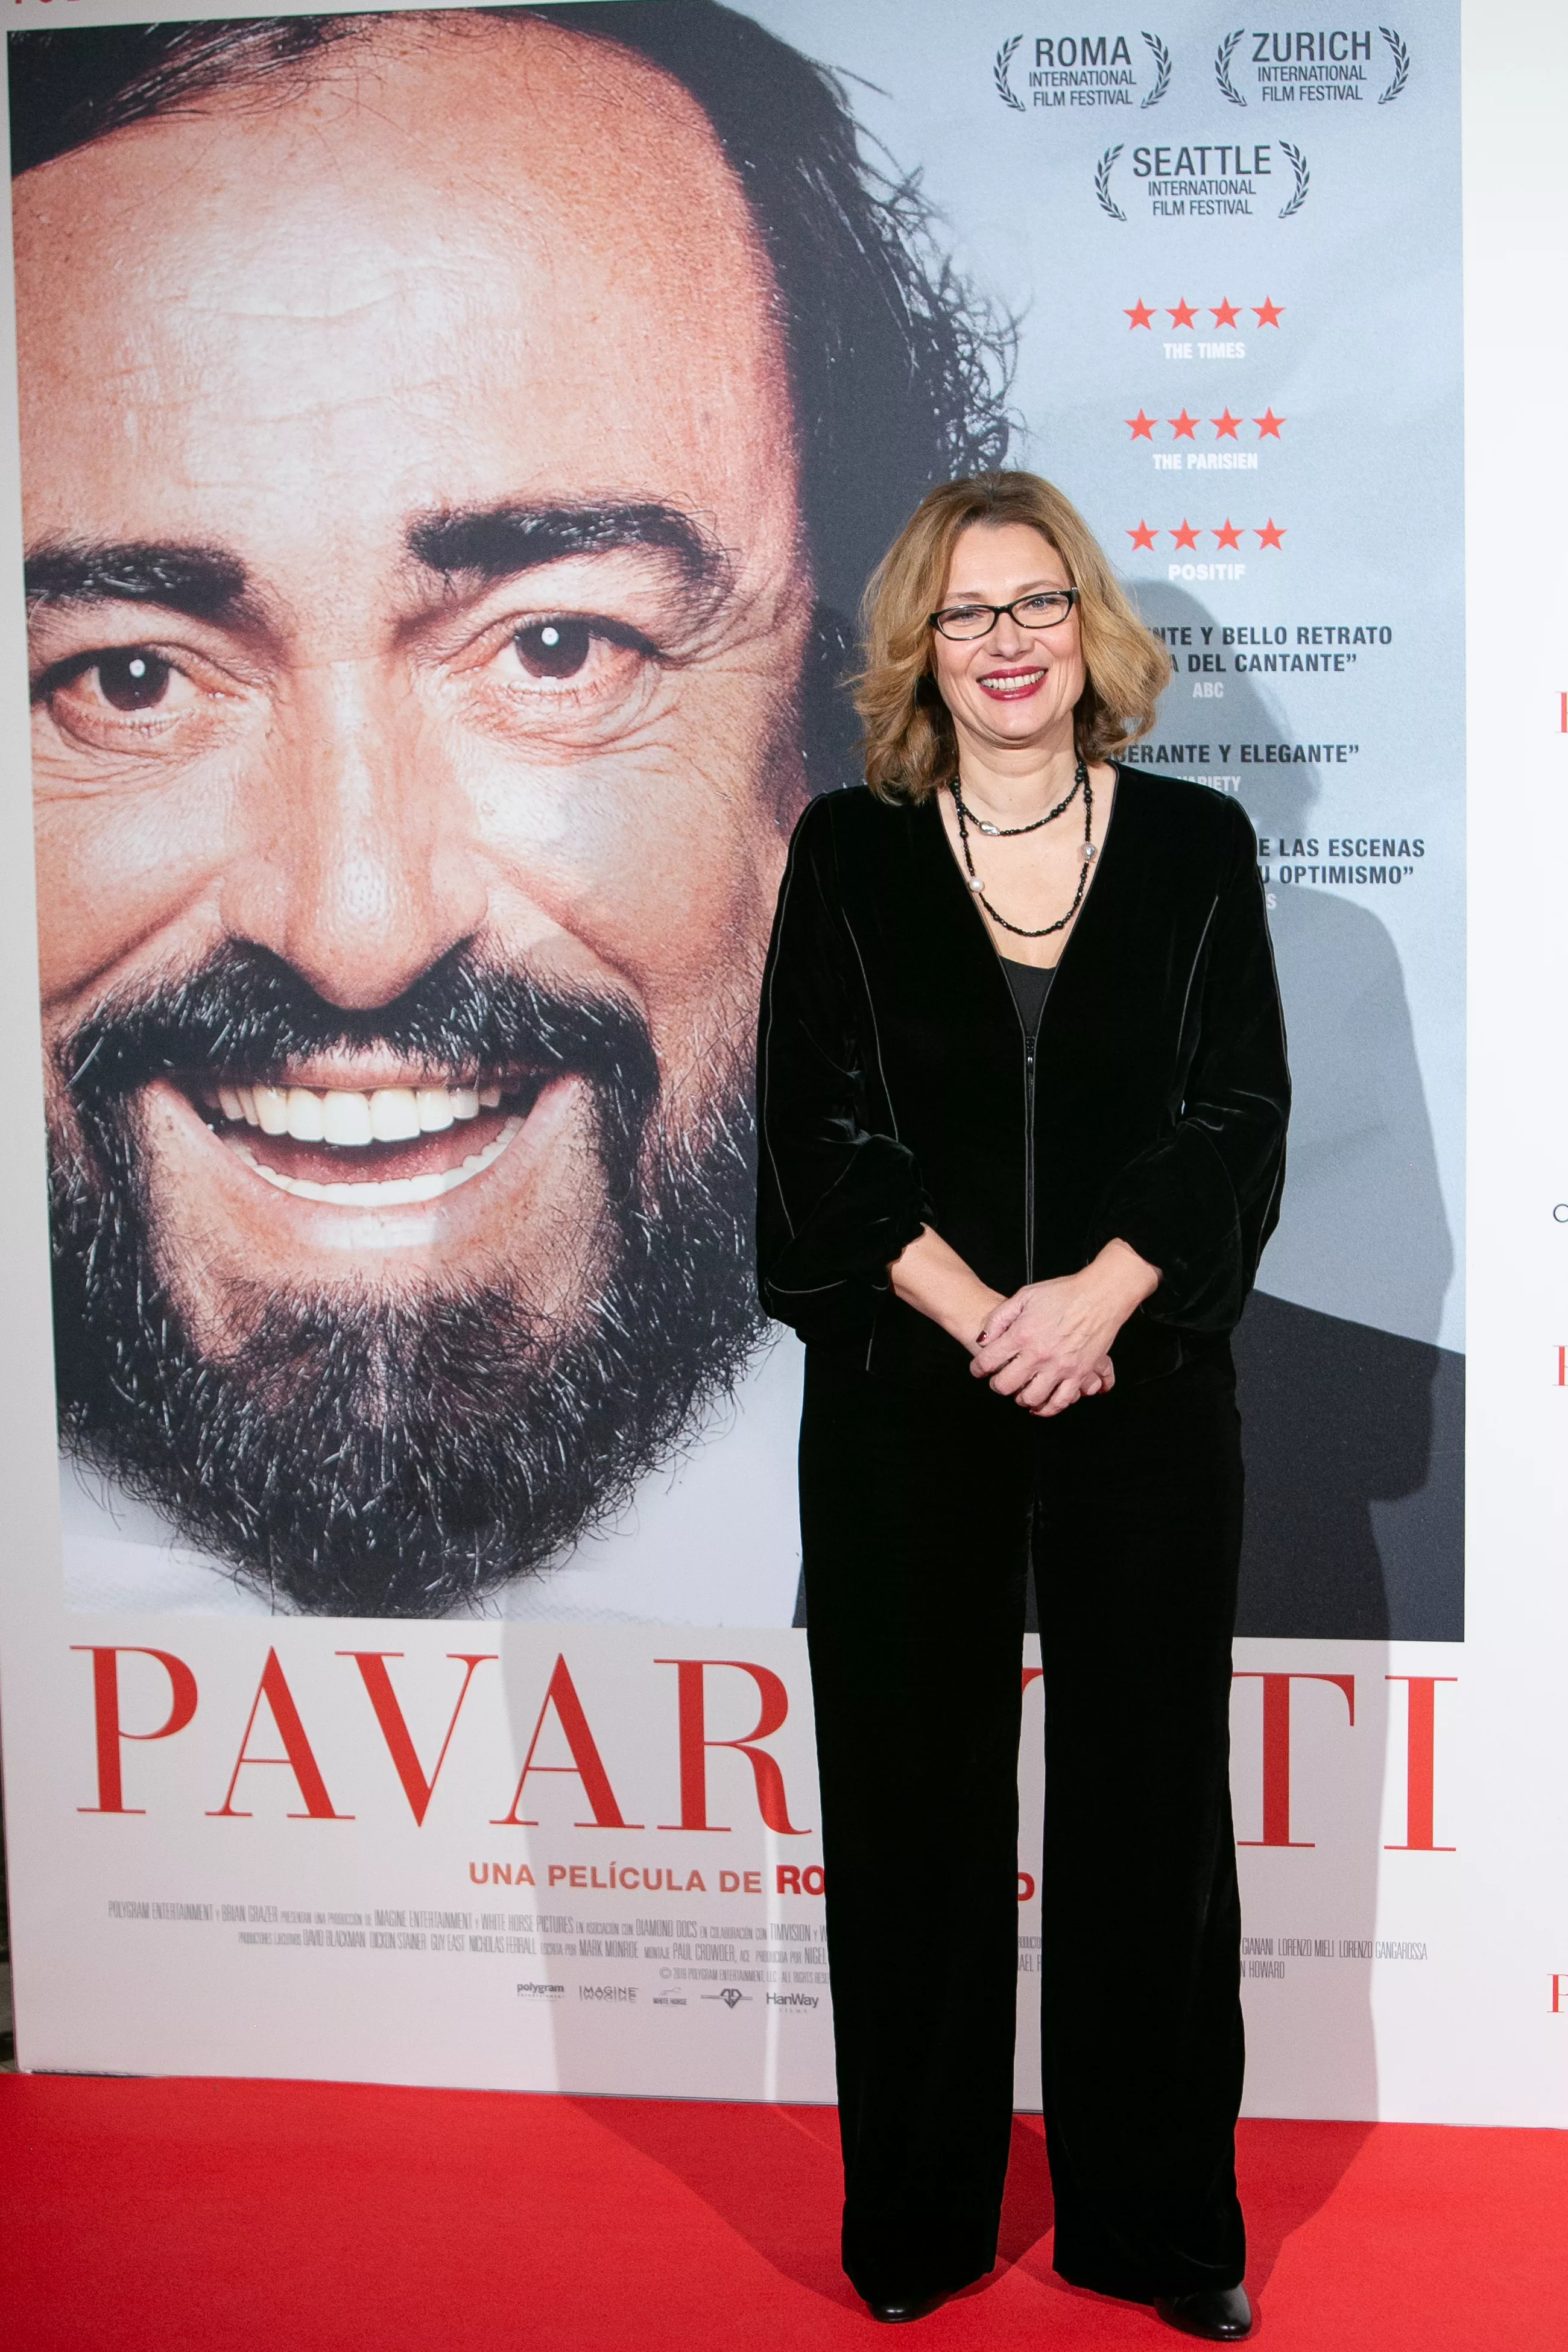 Ніколетта Мантовані на прем'єрі фільму "Паваротті". 2019 рік, Мадрид, Іспанія